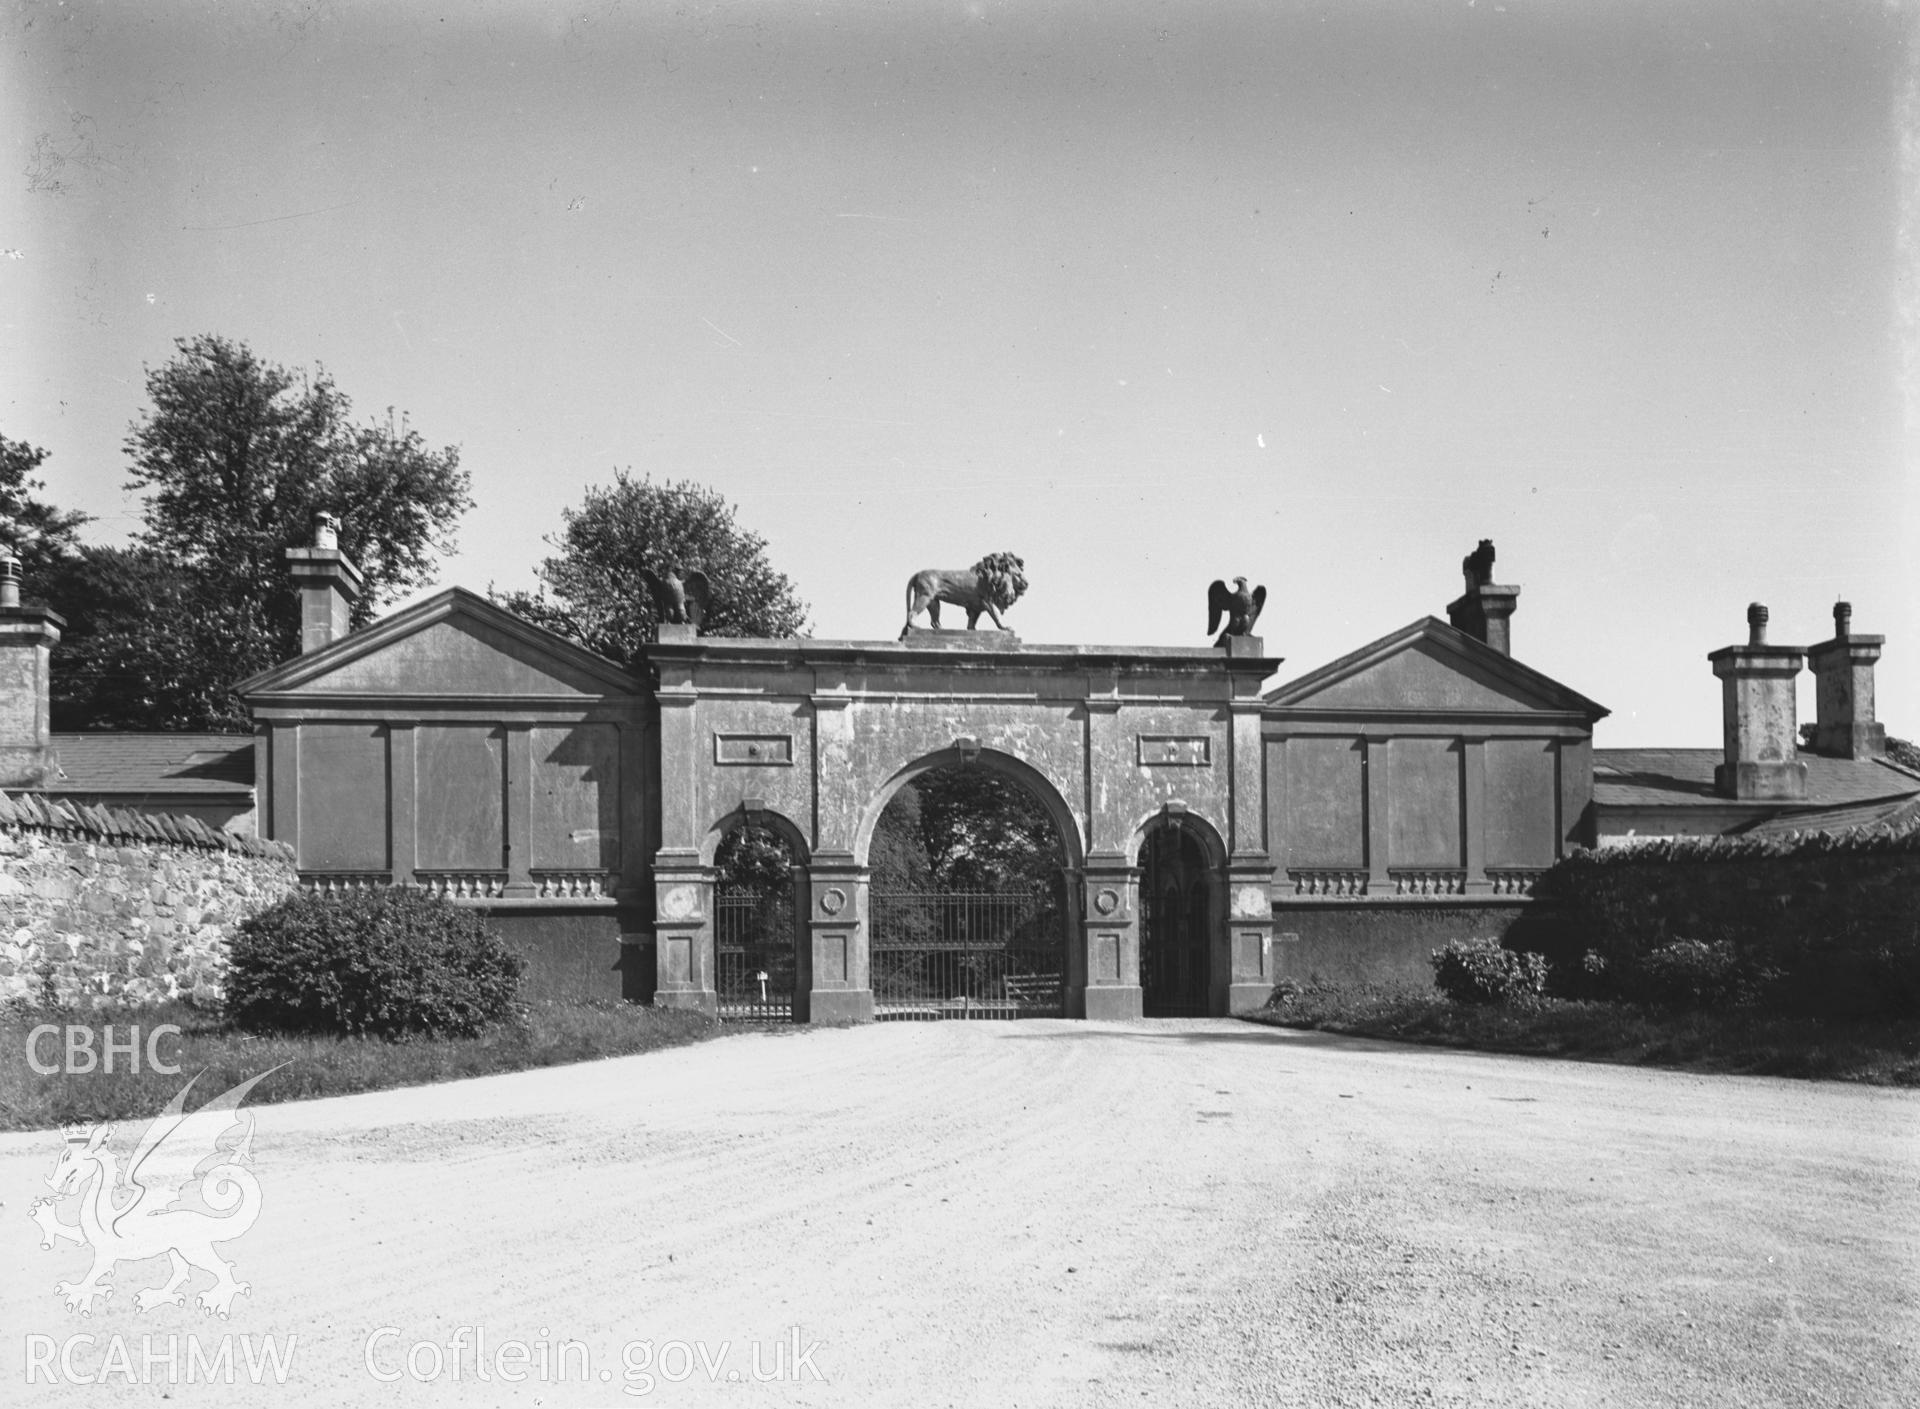 Views of gates at Glynllifon